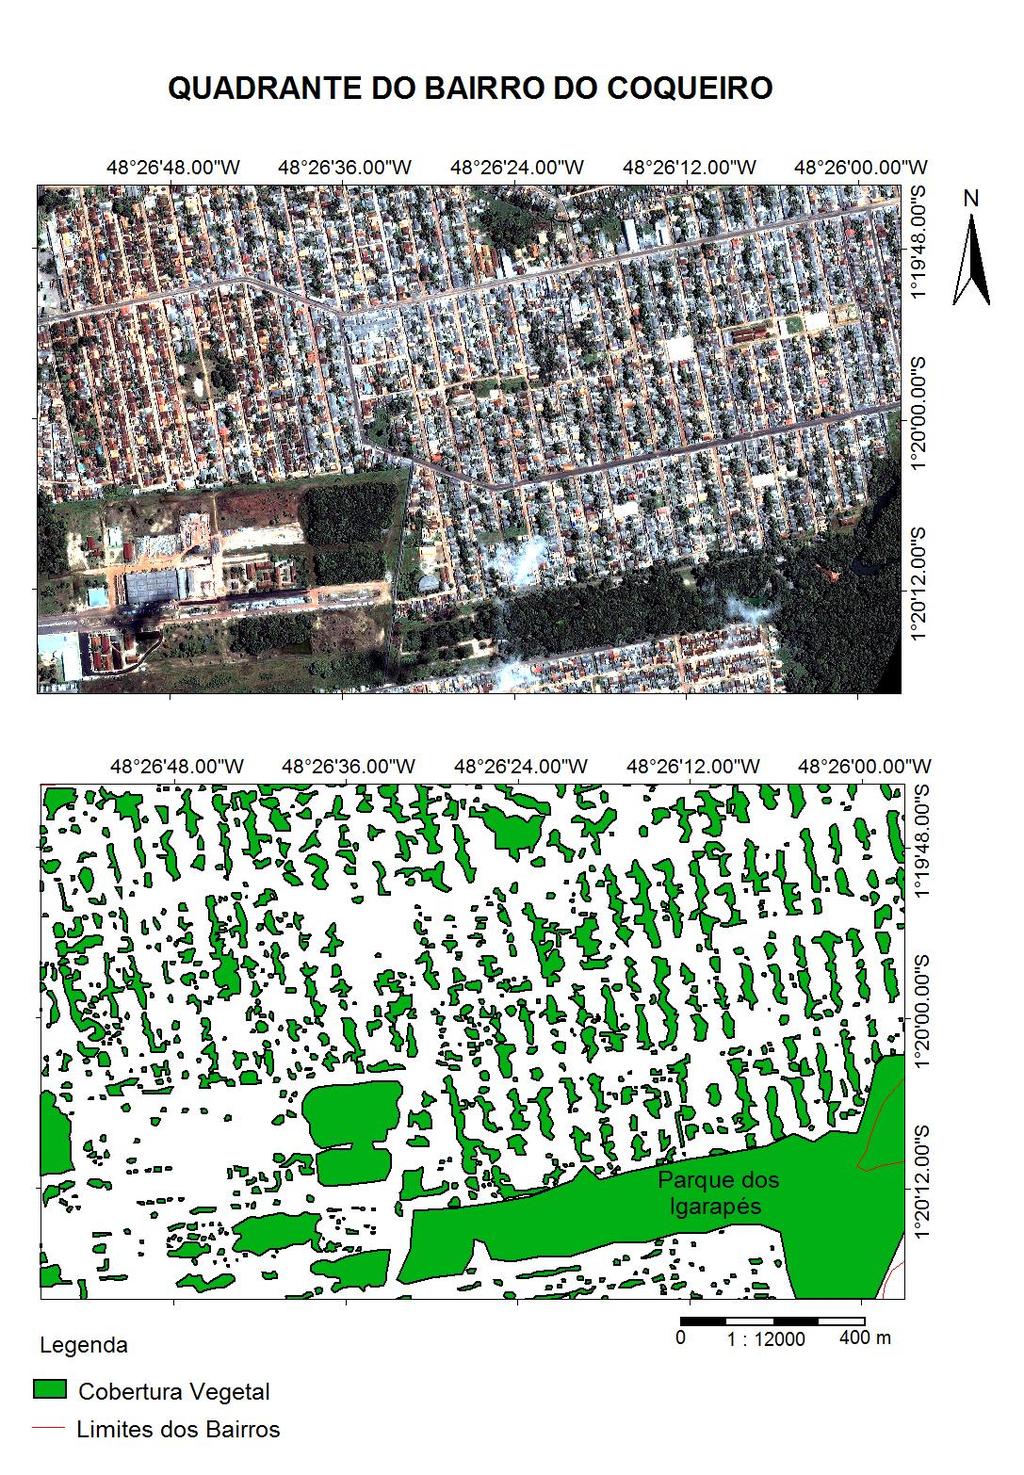 Observações geográficas no bairro do Coqueiro. Encontramos um padrão regular de quintais urbanos arborizados no conjunto Jardim Maguari, localizado no nordeste do DABEN.